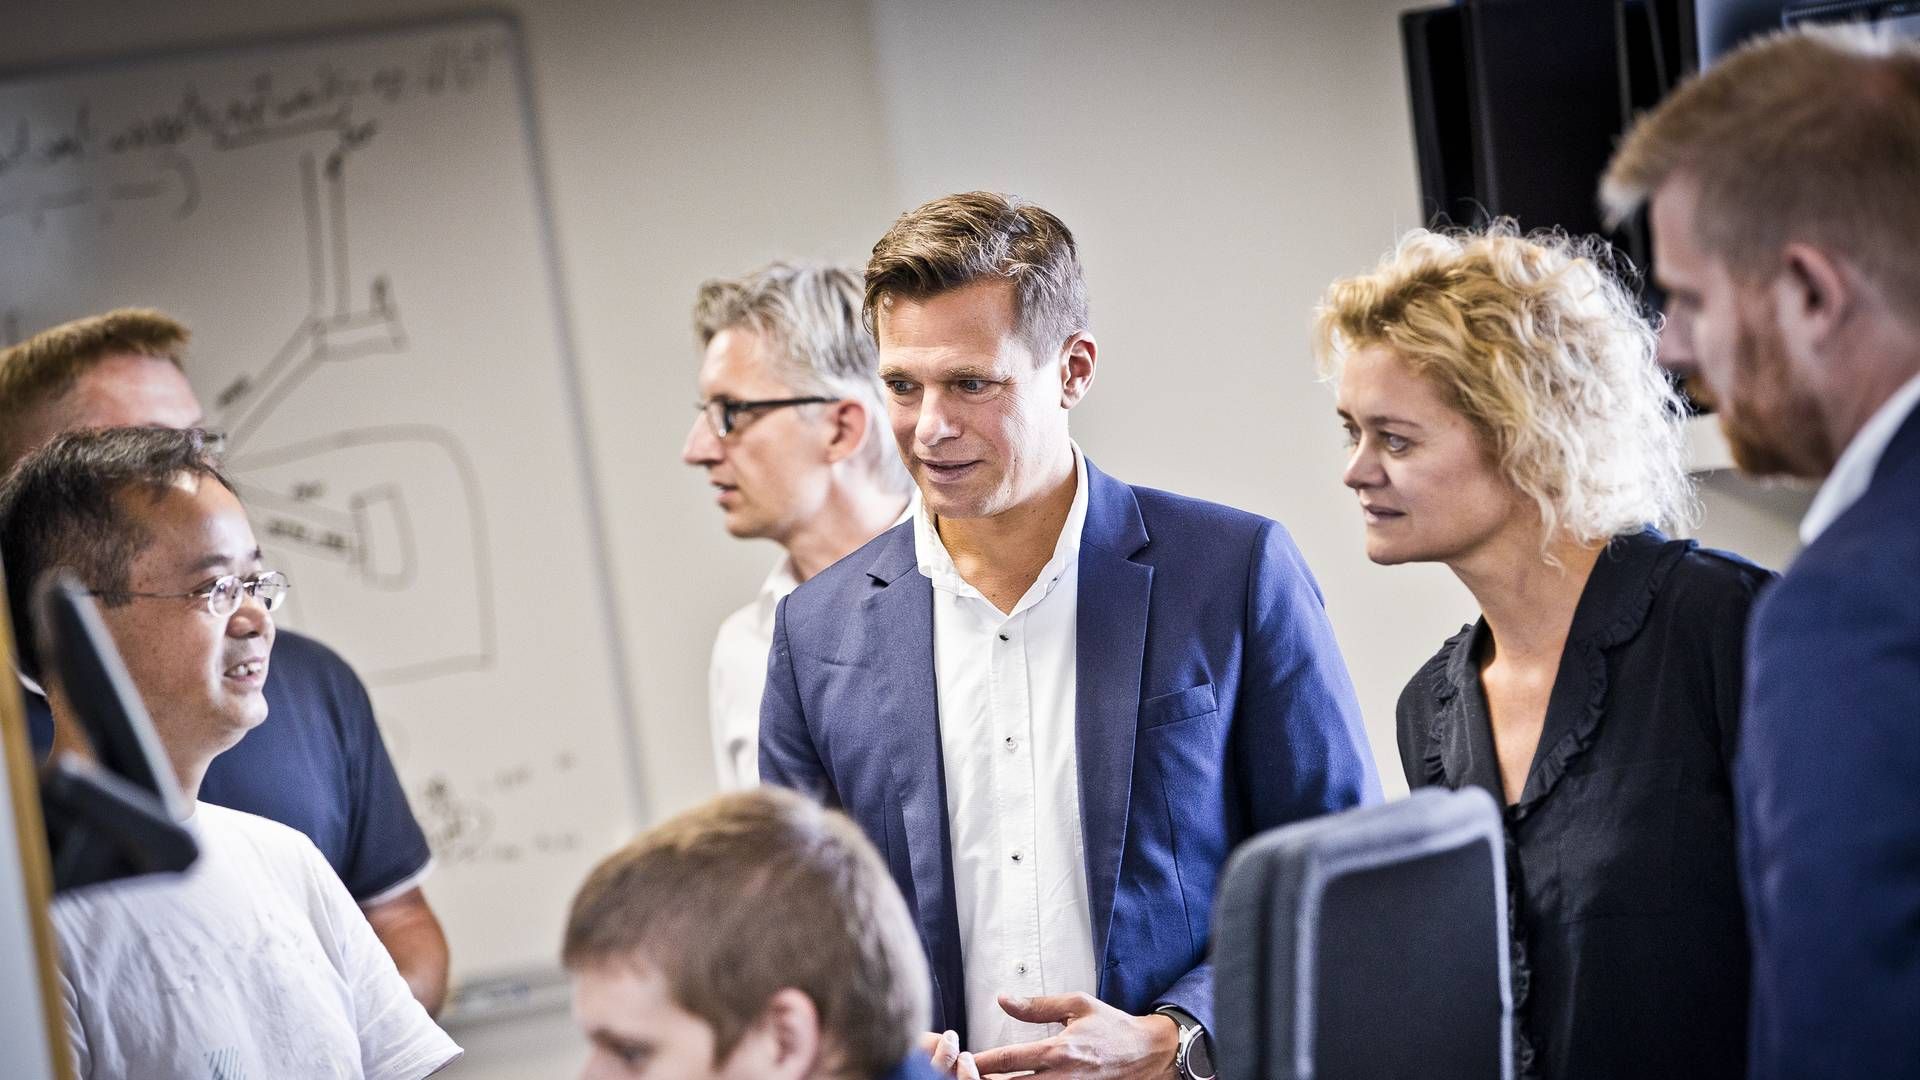 Adm. direktør Daniel Lux (i midten i blå habitjakke) forventer sammen med resten af Seluxits ledelse, at det i det kommende regnskabsår lykkes at vende den nedadgående vækstkurve for it-selskabets omsætning | Foto: Ernst Tobisch / Seluxit / PR